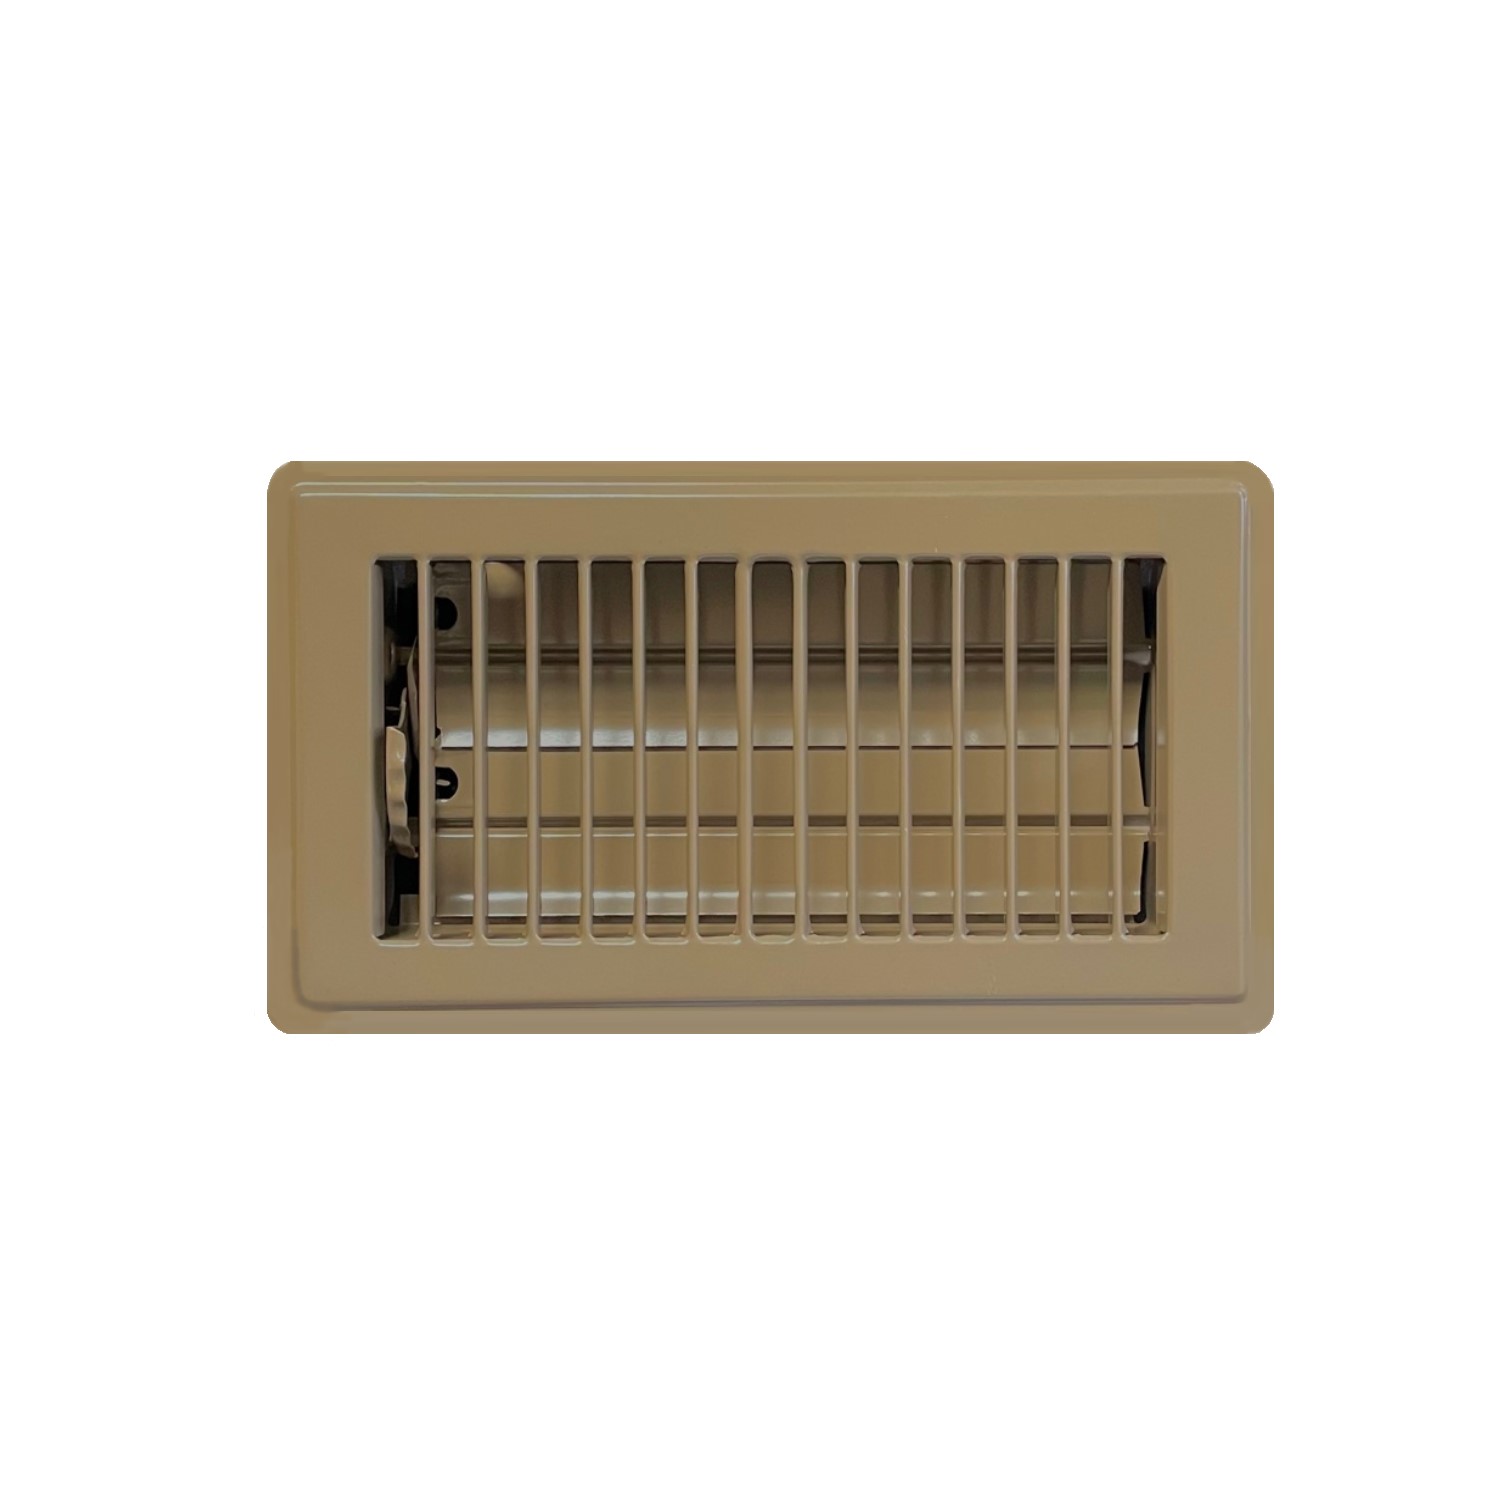 4 X 8 Stamped Steel Floor Register - Brown